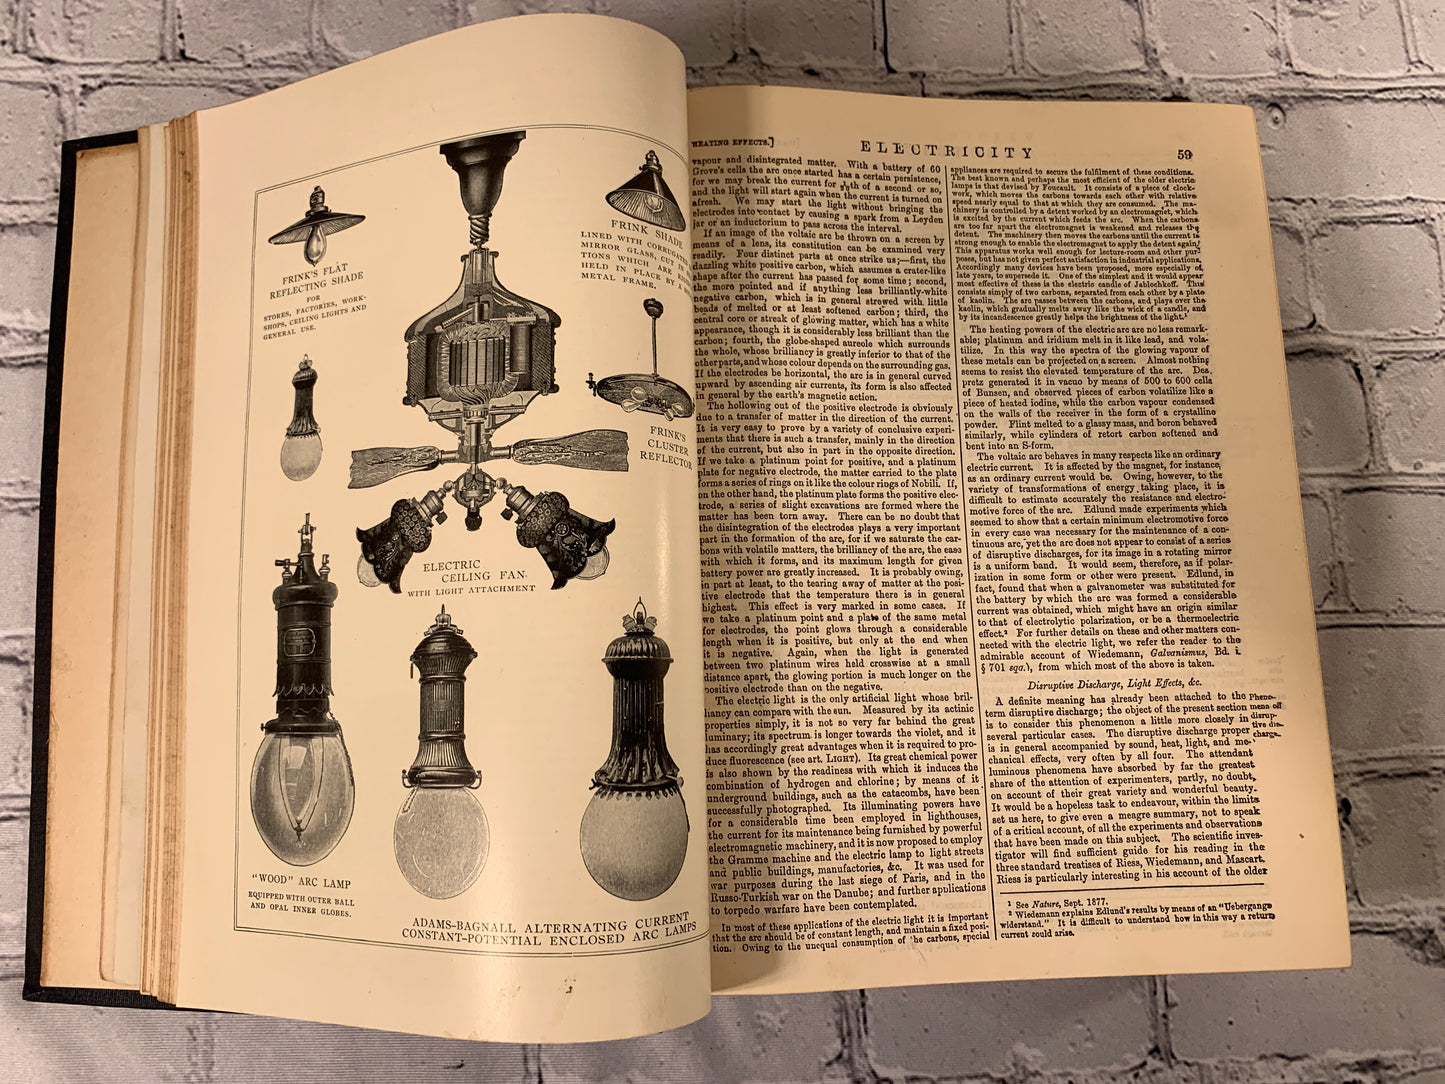 The Encyclopedia Britannica New Werner Edition Twentieth Century Vol VIII [1903]